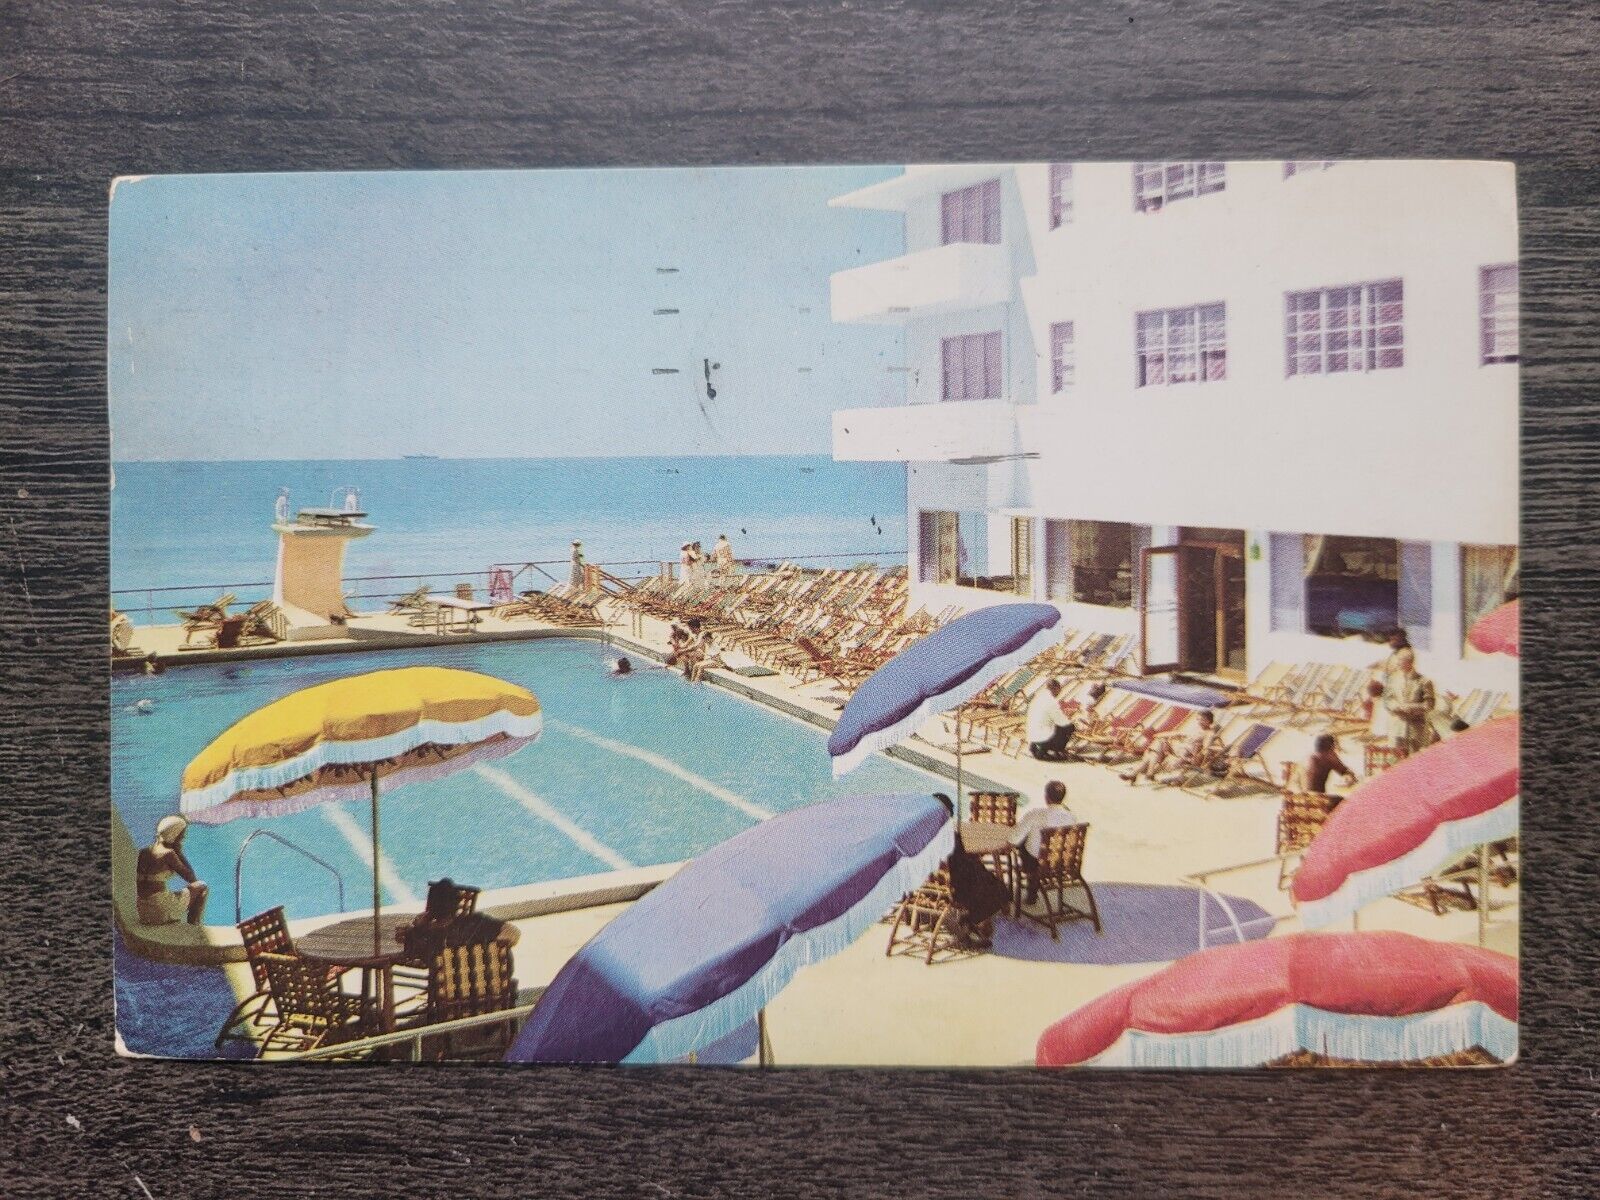 The Delmonico Hotel Miami Beach Florida Chrome Postcard c1950 Coast Guard Enlist